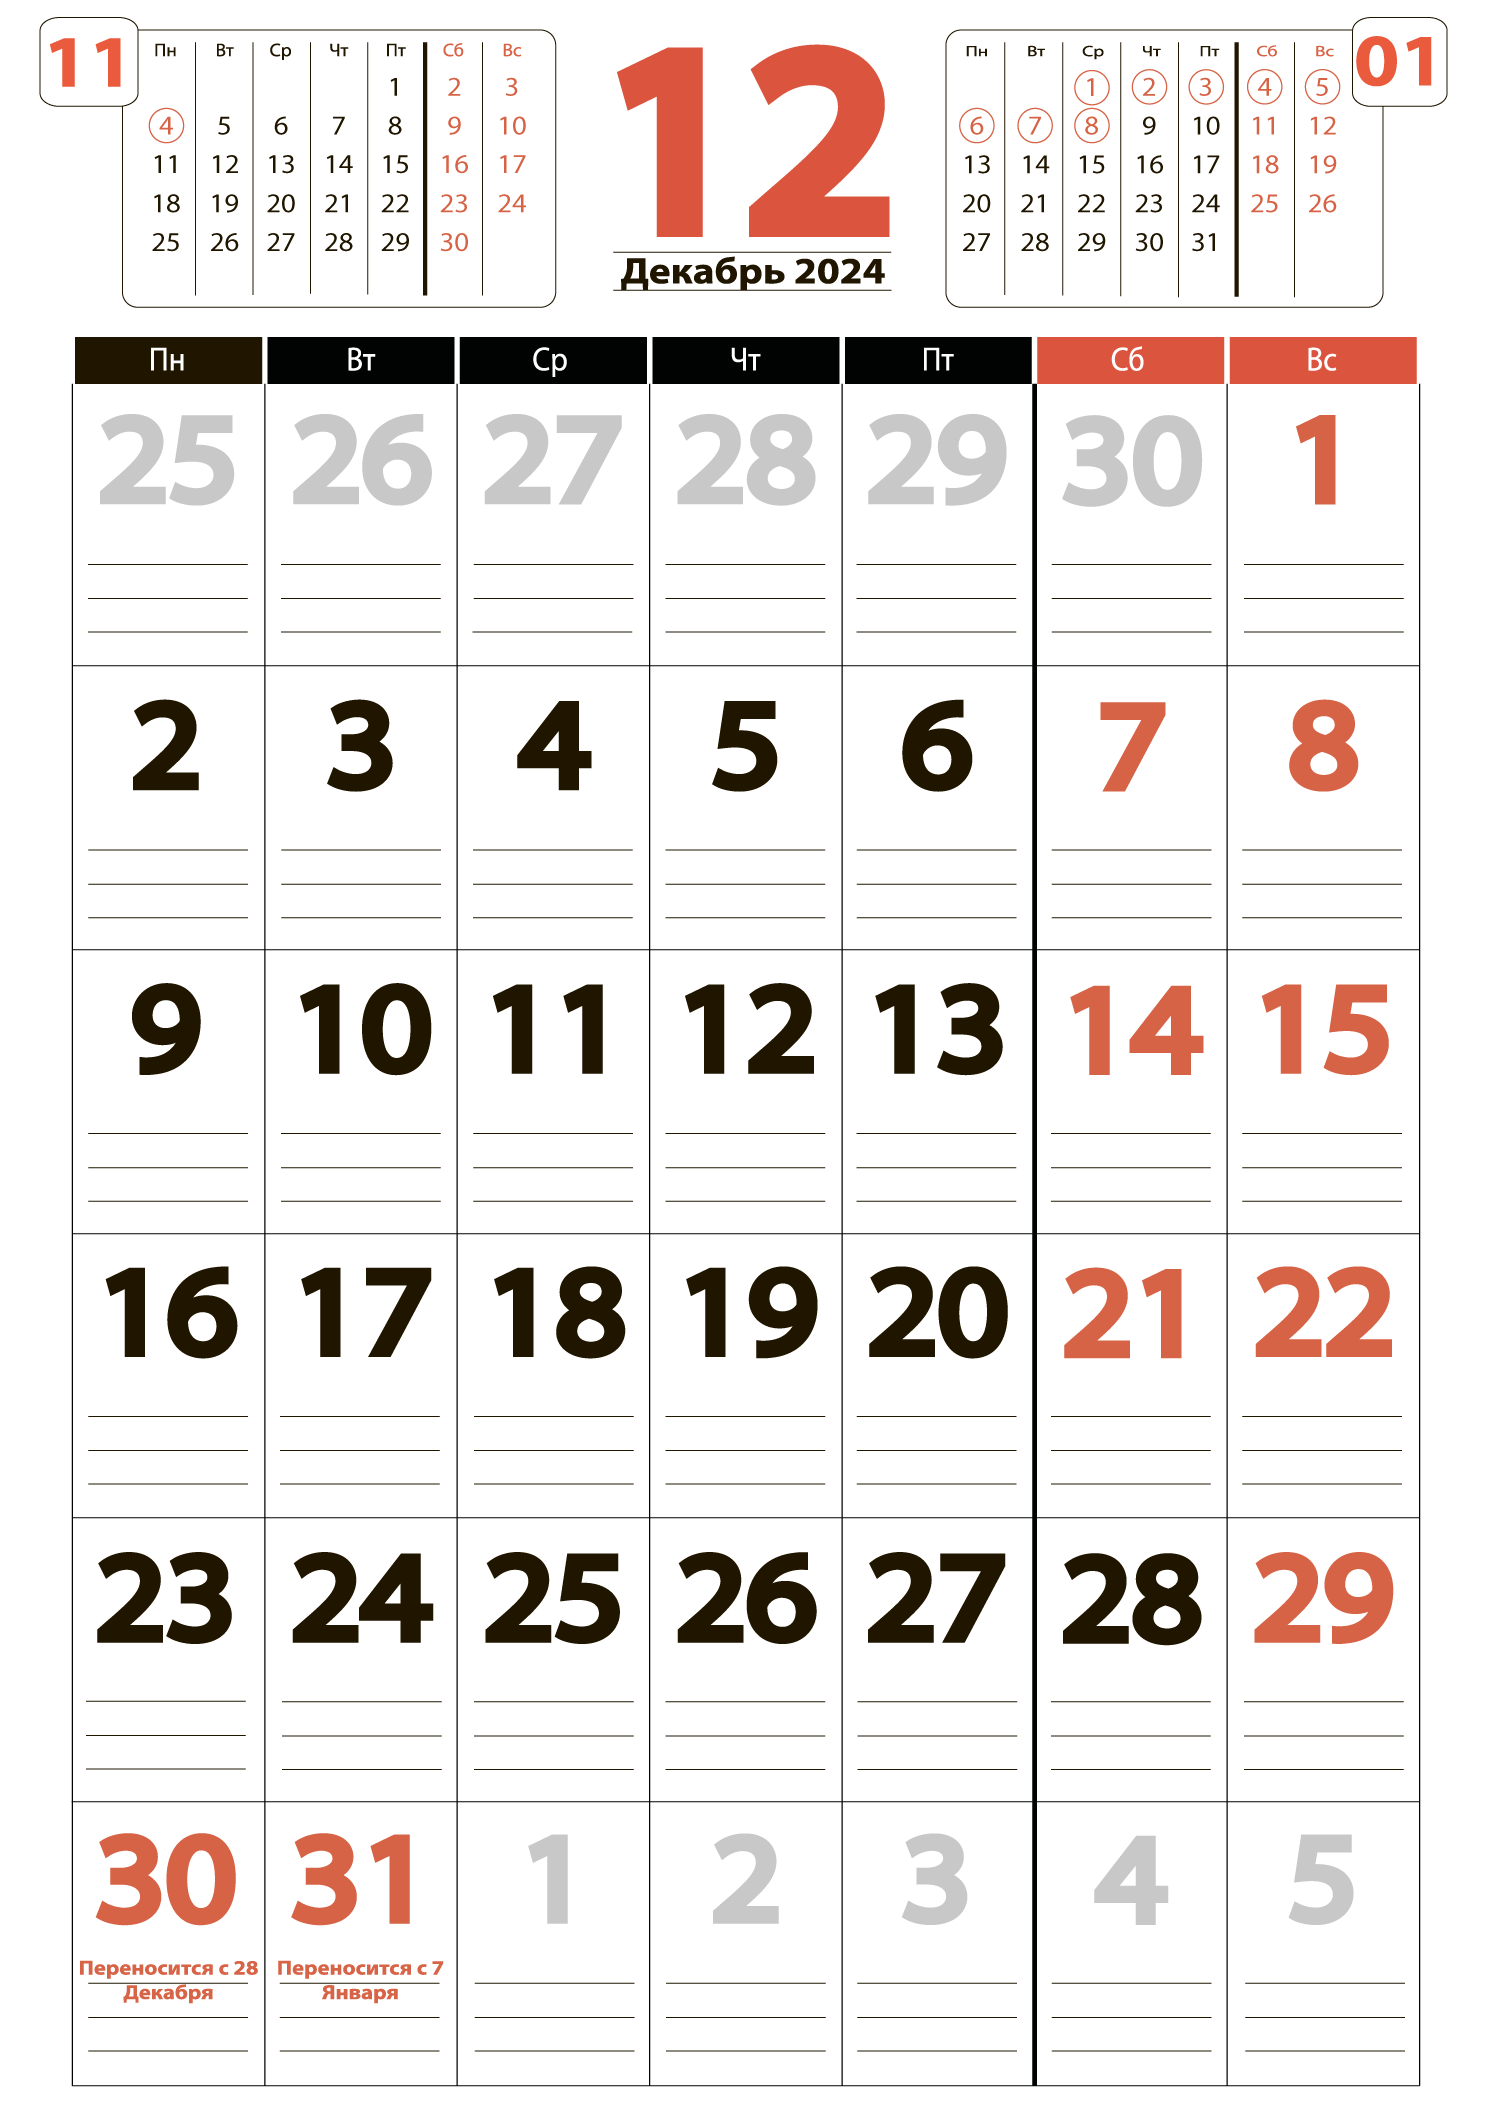 Печать крупного календаря на декабрь 2024